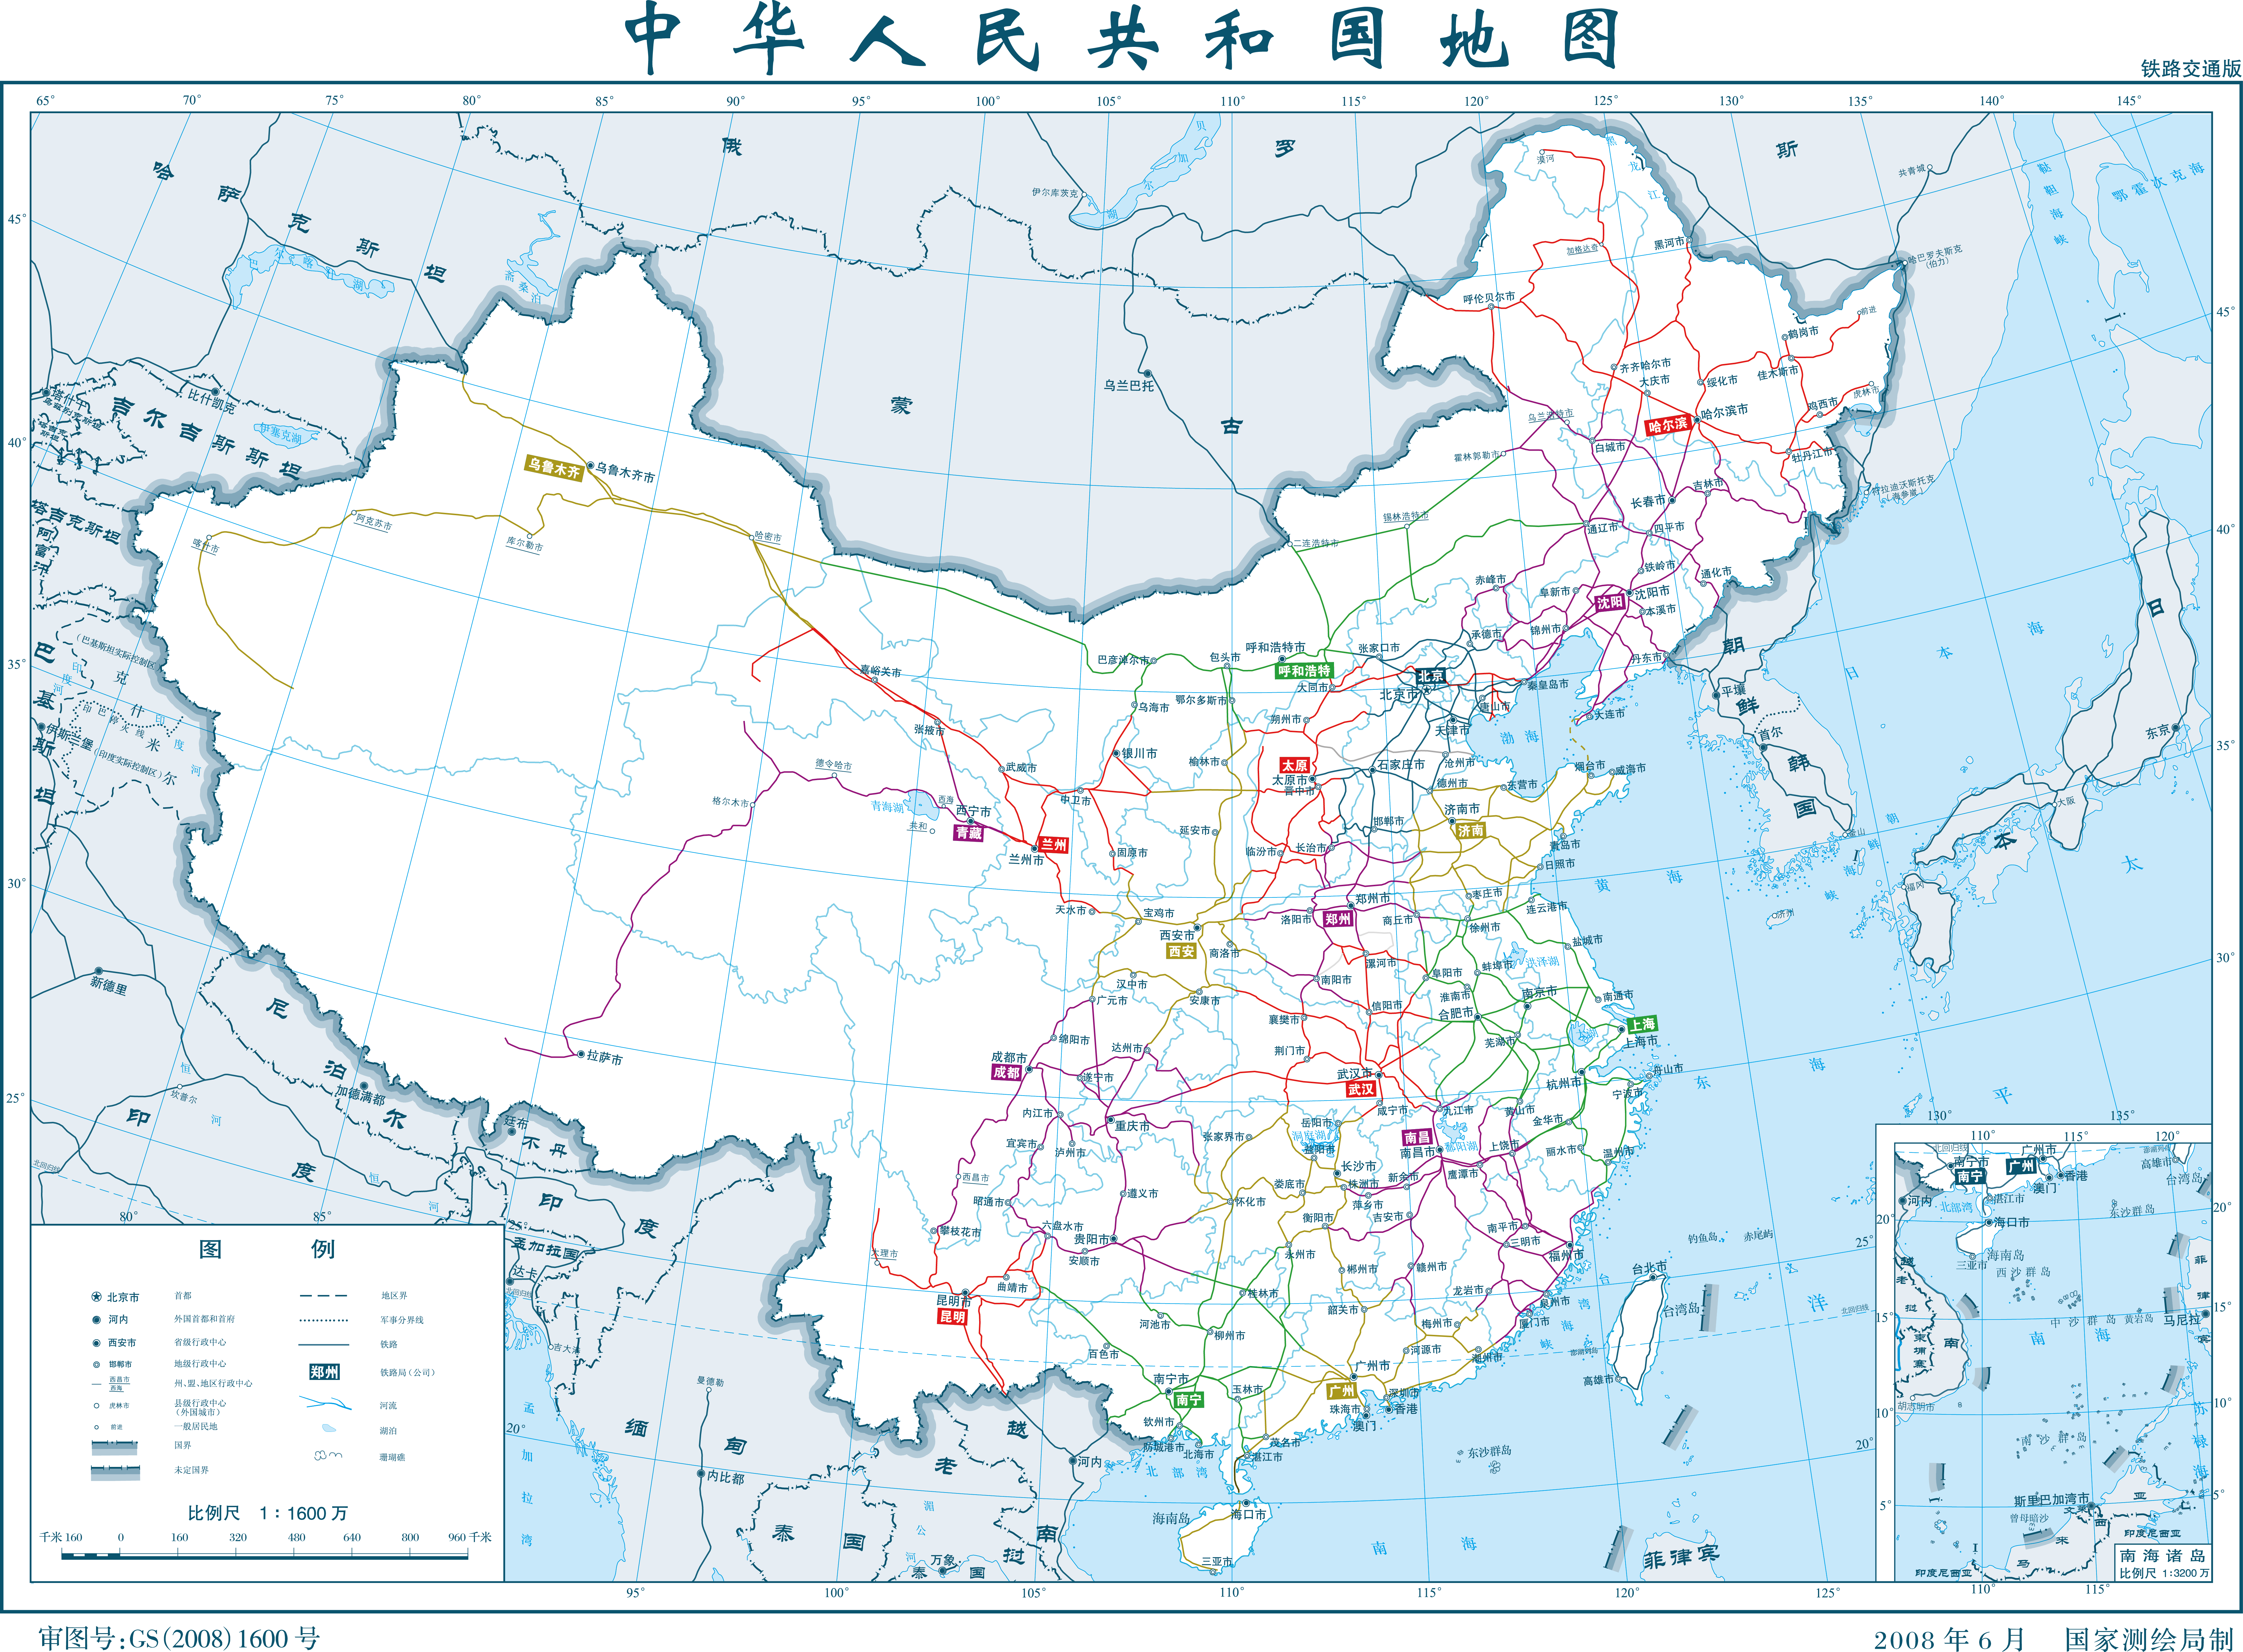 2020年中国铁路线路图图片